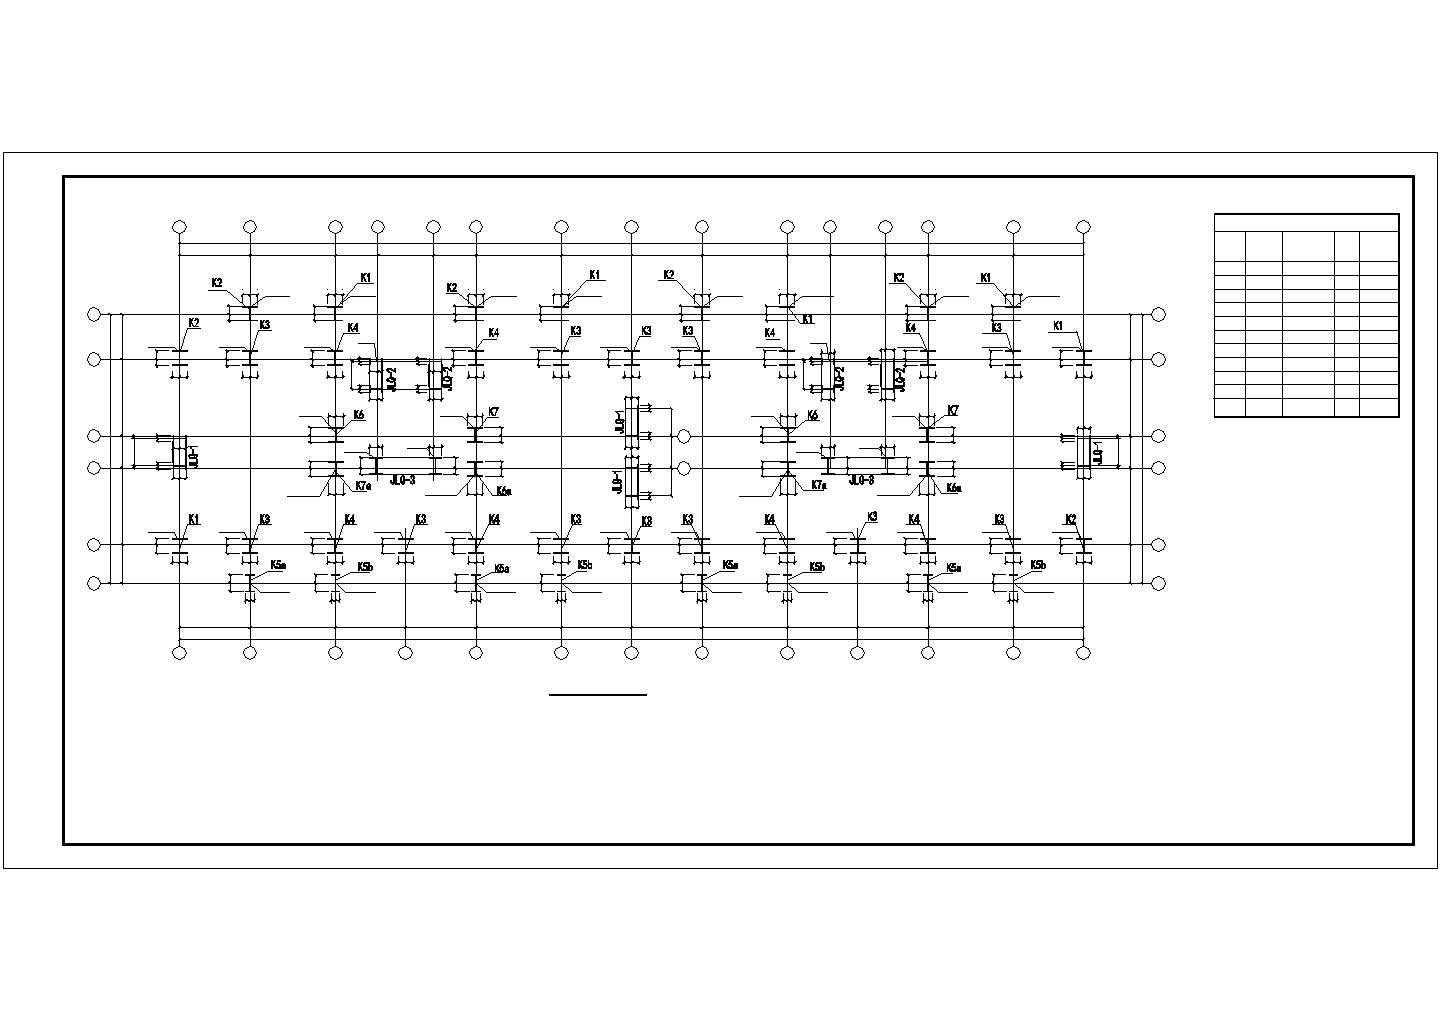 某6层钢框架综合楼结构施工图(局部剪力墙)